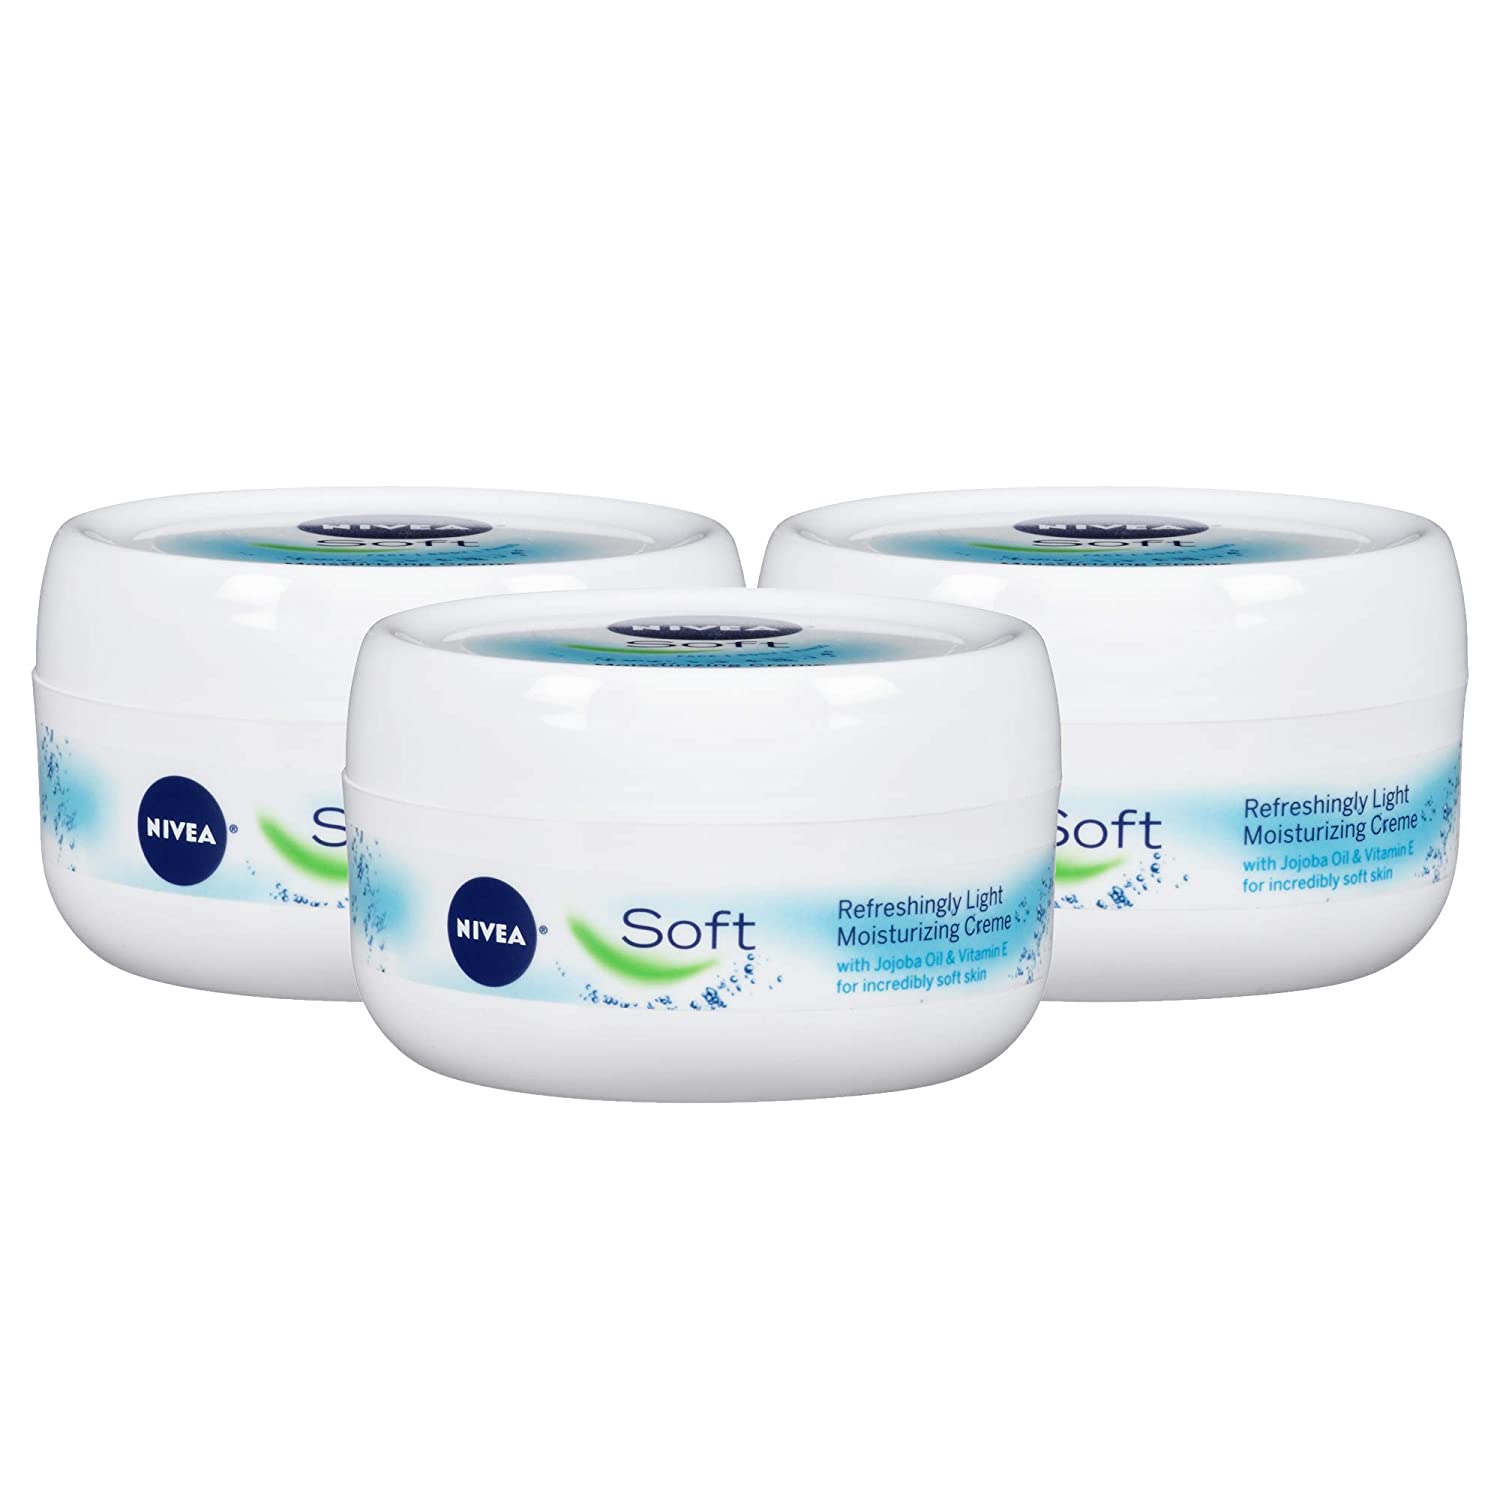 NIVEA Soft Refreshingly Light Formula Moisturizing Cream, 3-Pack